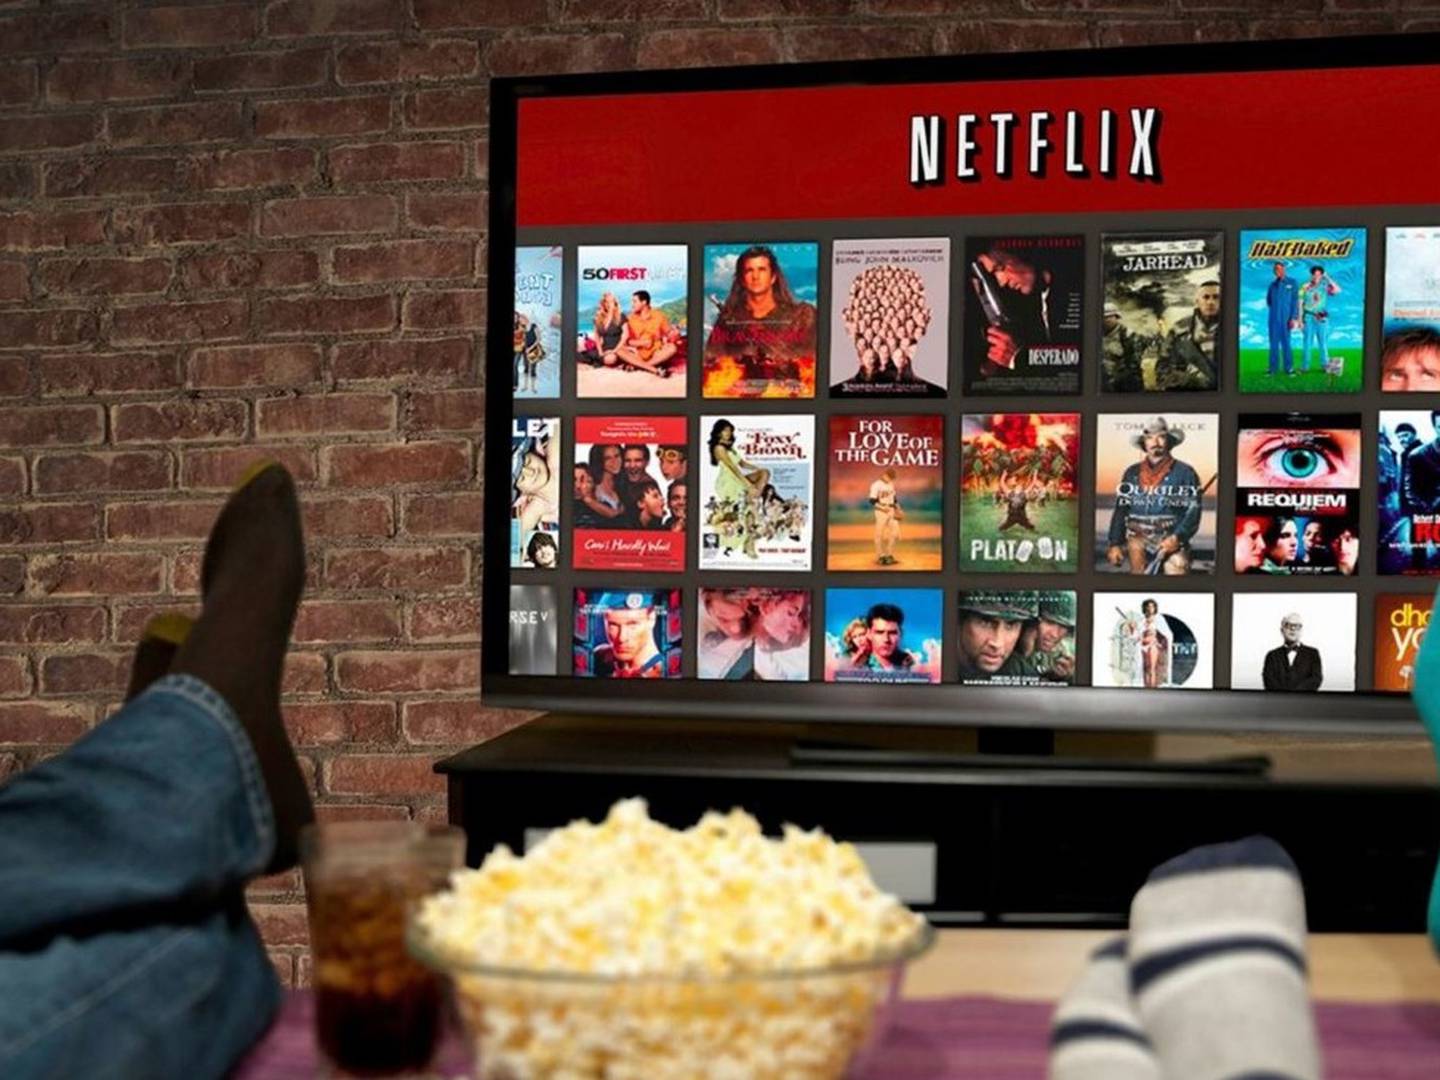 Desbloqueie a Netflix: Conheça os códigos para acessar os gêneros